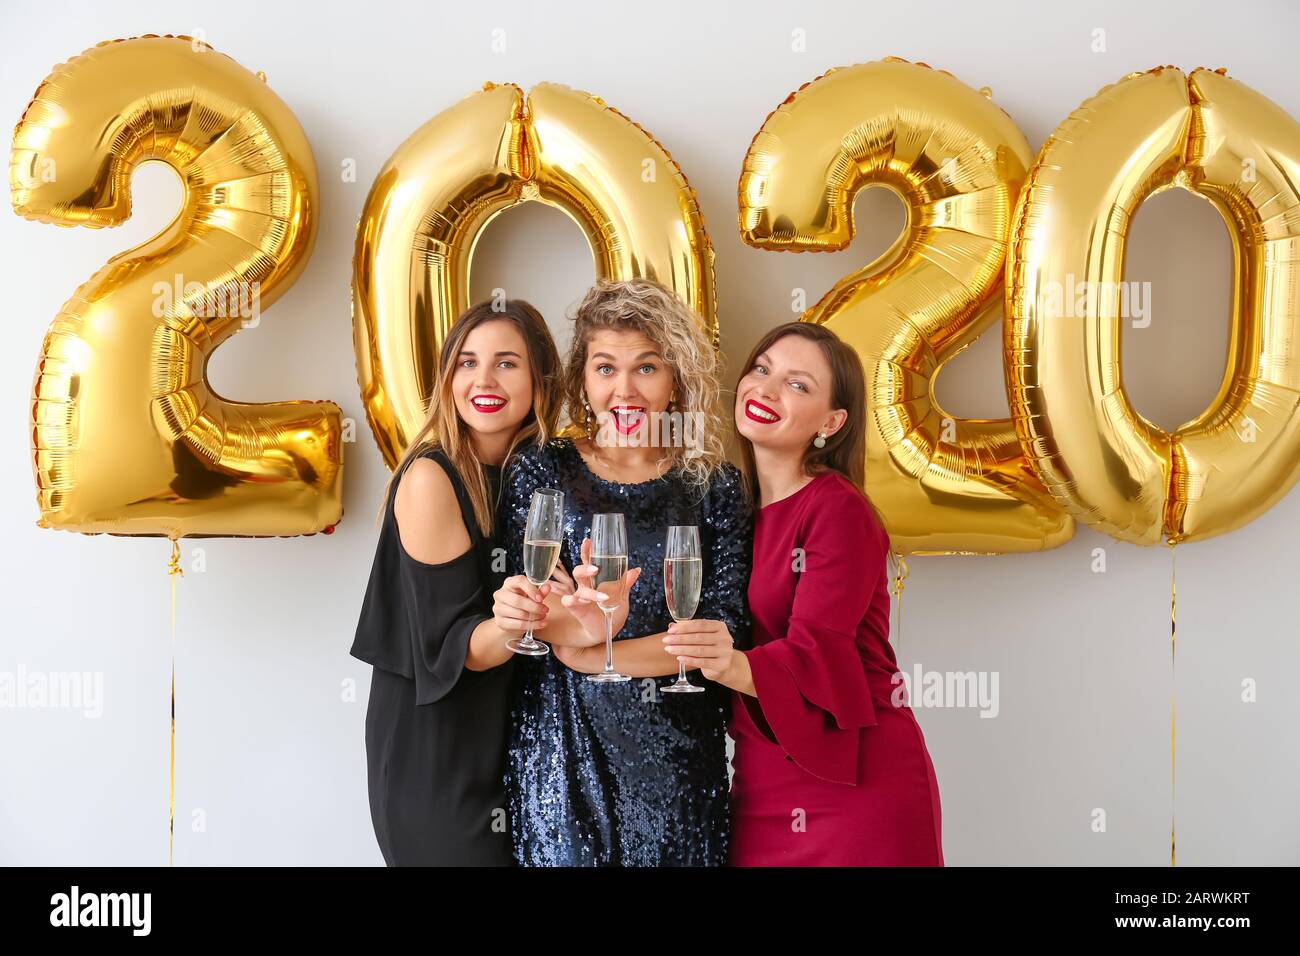 Schöne junge Frauen, die auf der Weihnachtsfeier Champagner trinken Stockfoto